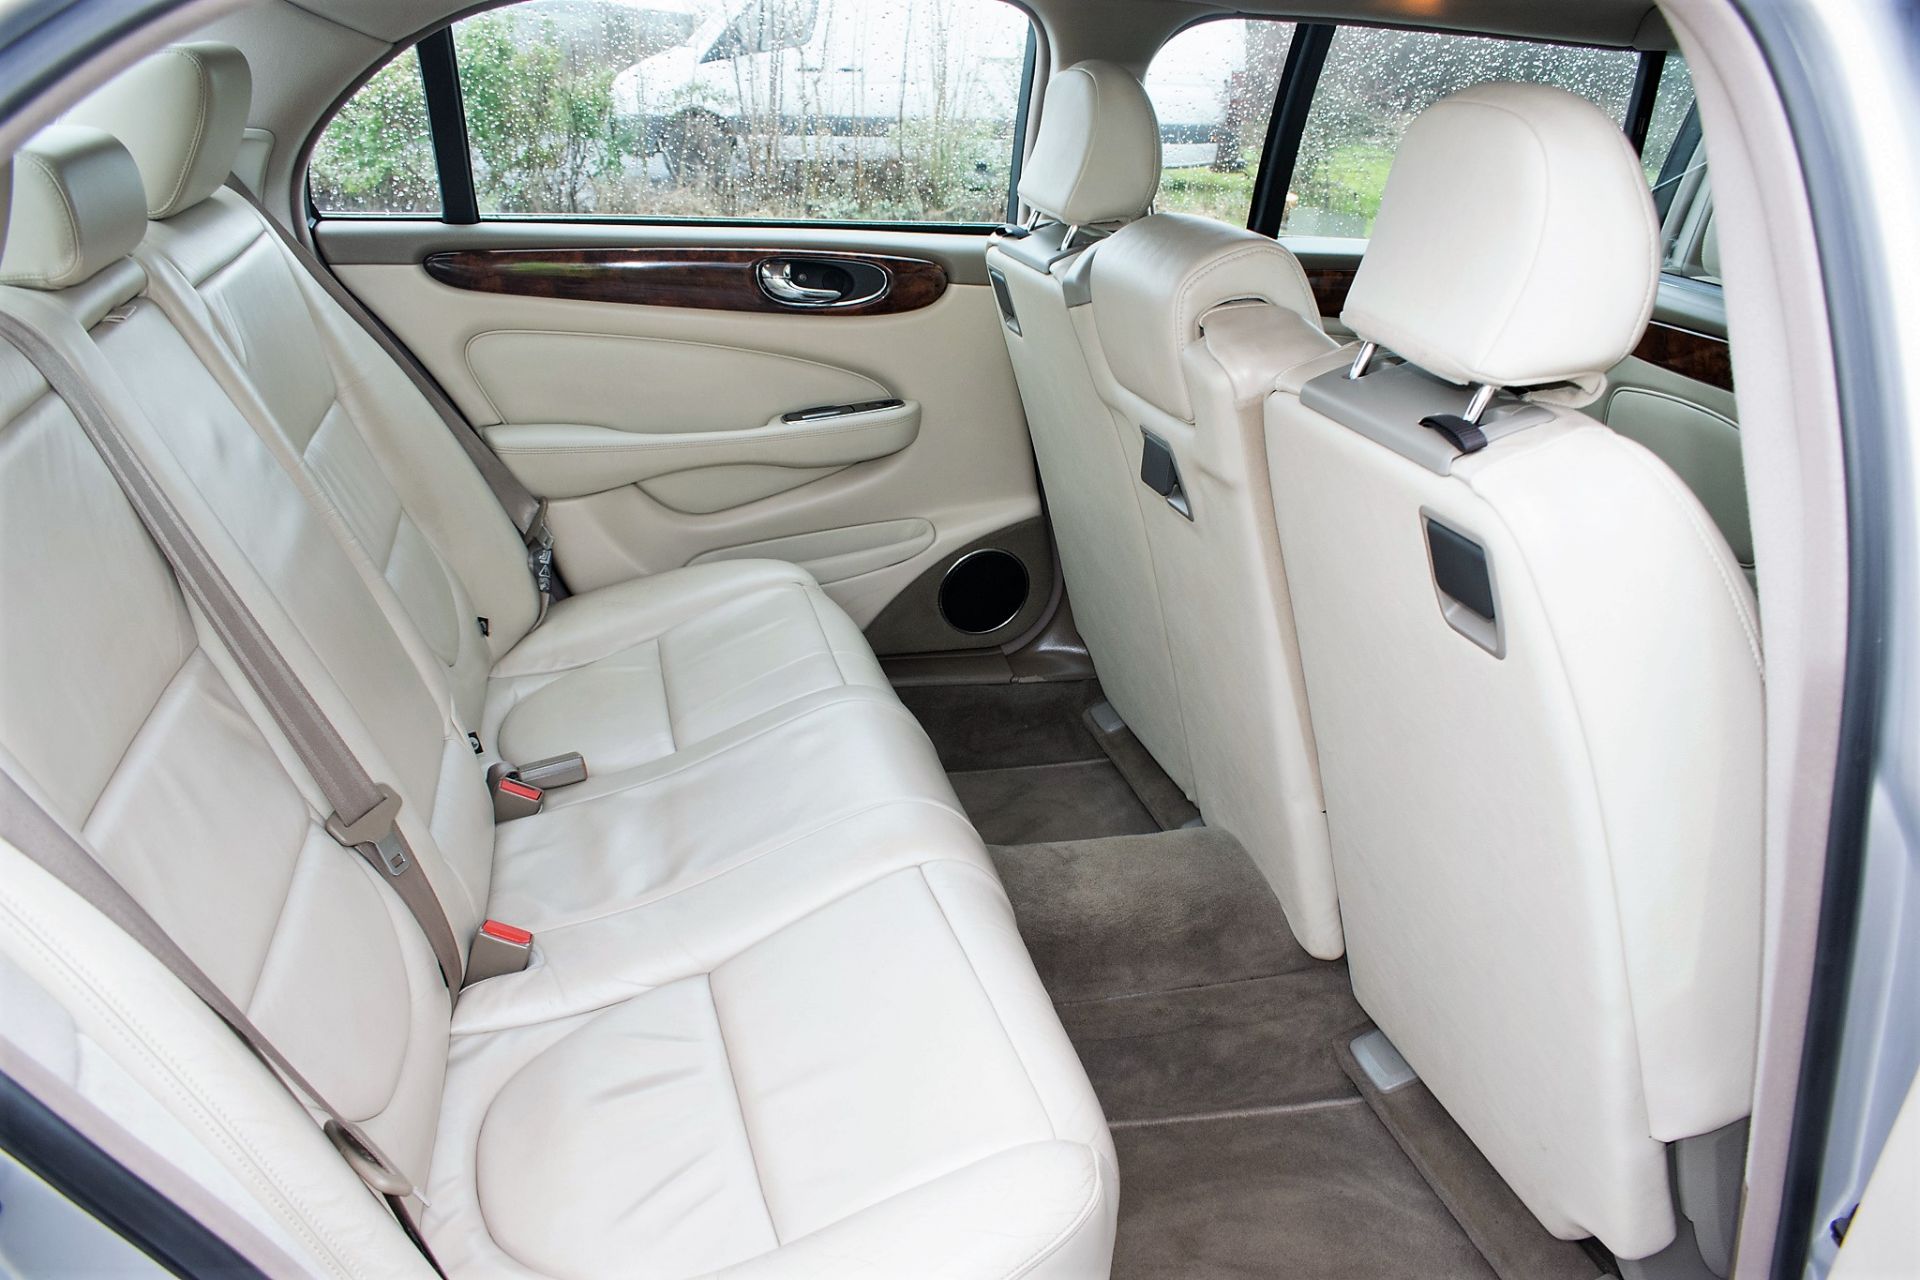 Jaguar XJ6 V6 automatic stretch Limousine Registration Number: BW54 YNM (Registration Number - Image 11 of 20